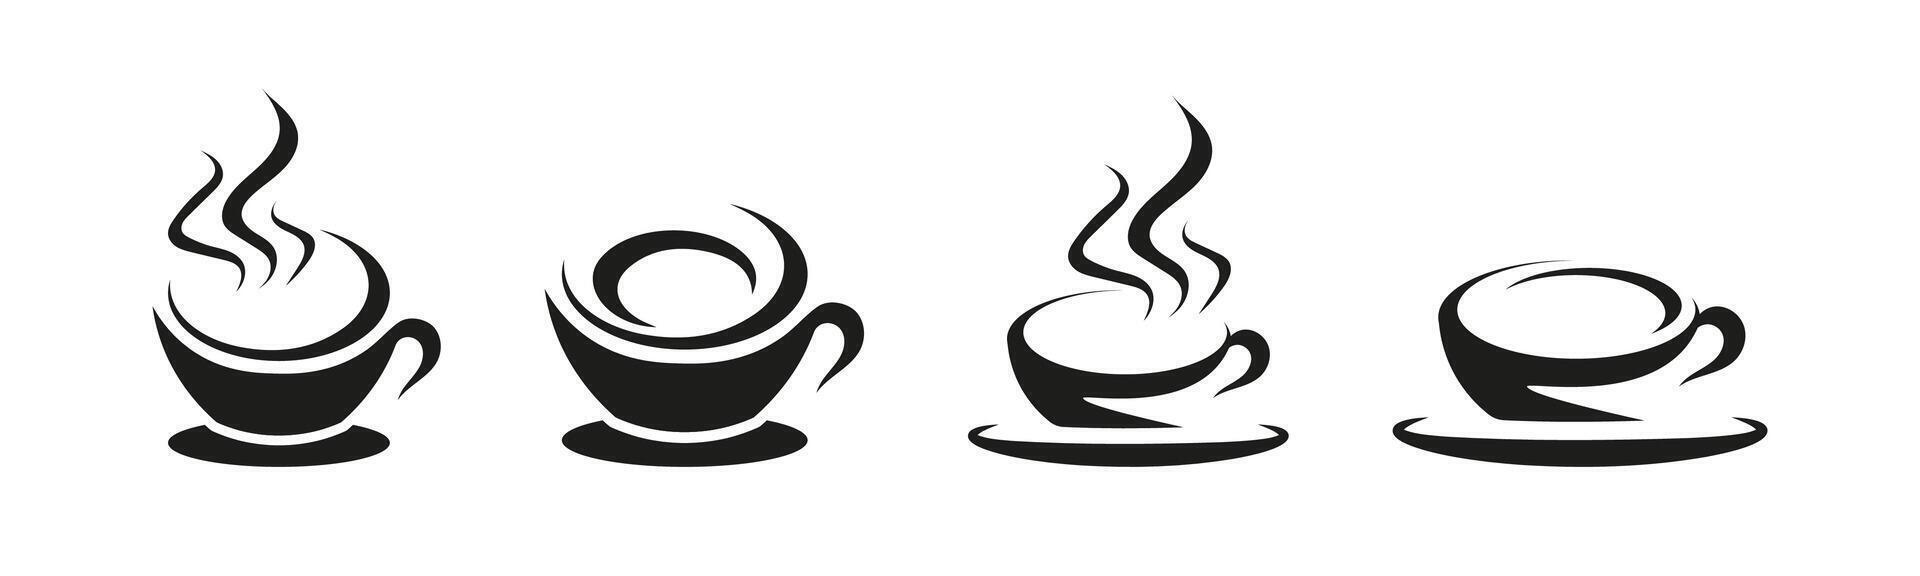 Tasse mit Tee oder Kaffee Logo Sammlung. Cafe Logo Satz. vektor